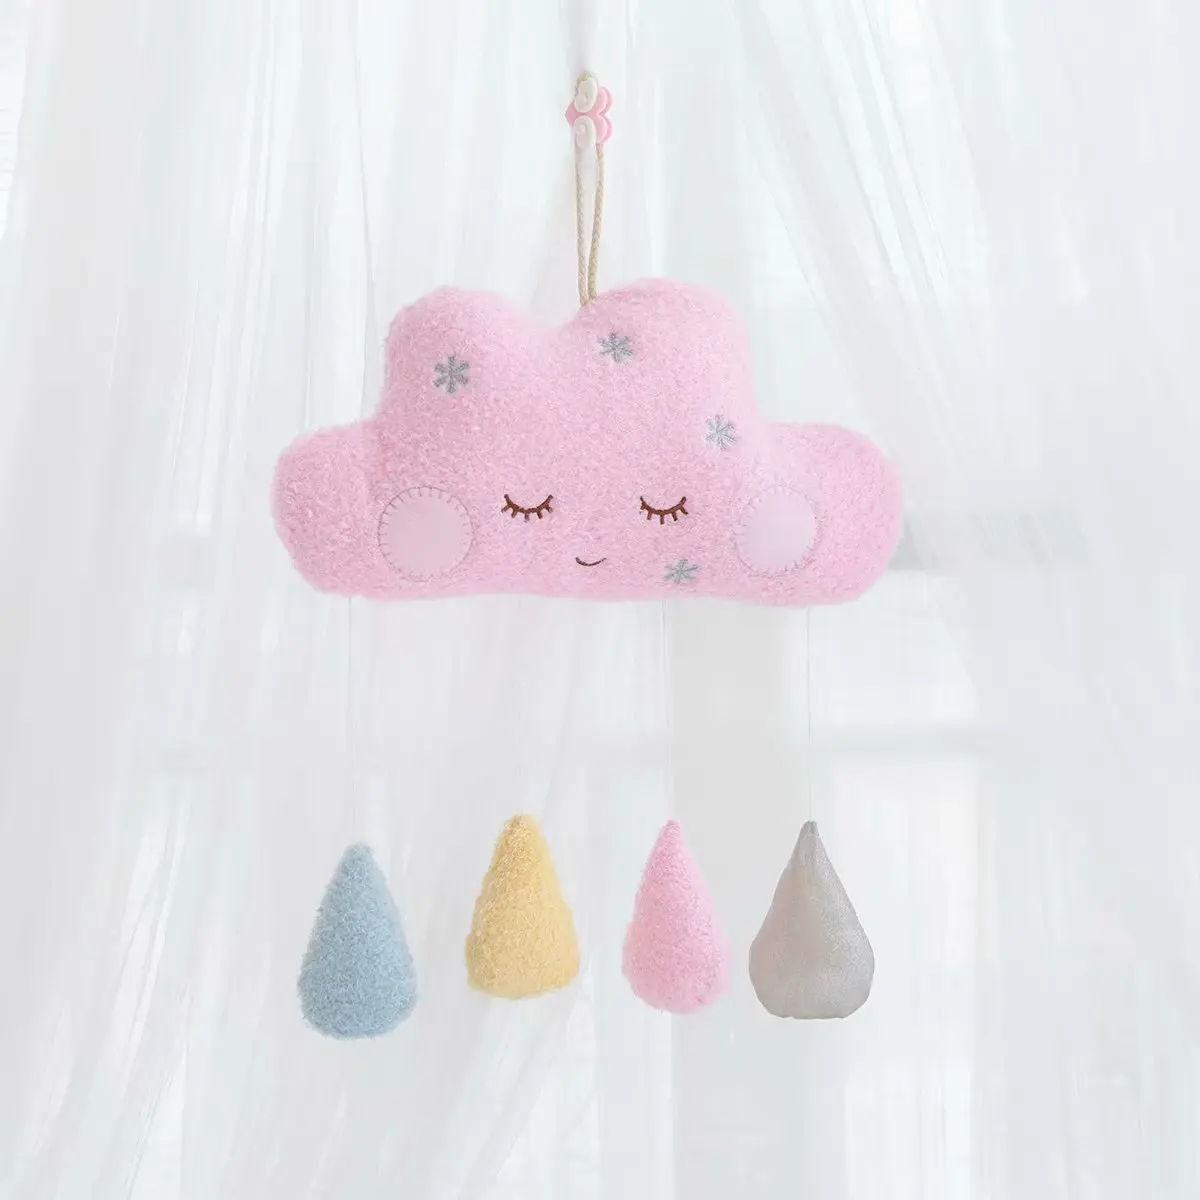 Лунная креативная Подушка, плюшевая игрушка, кукла для маленькой девочки, декор комнаты, плюшевое облако, на стену, для девочки, подарок на день рождения, 35*20 см - Цвет: Cloud Pink